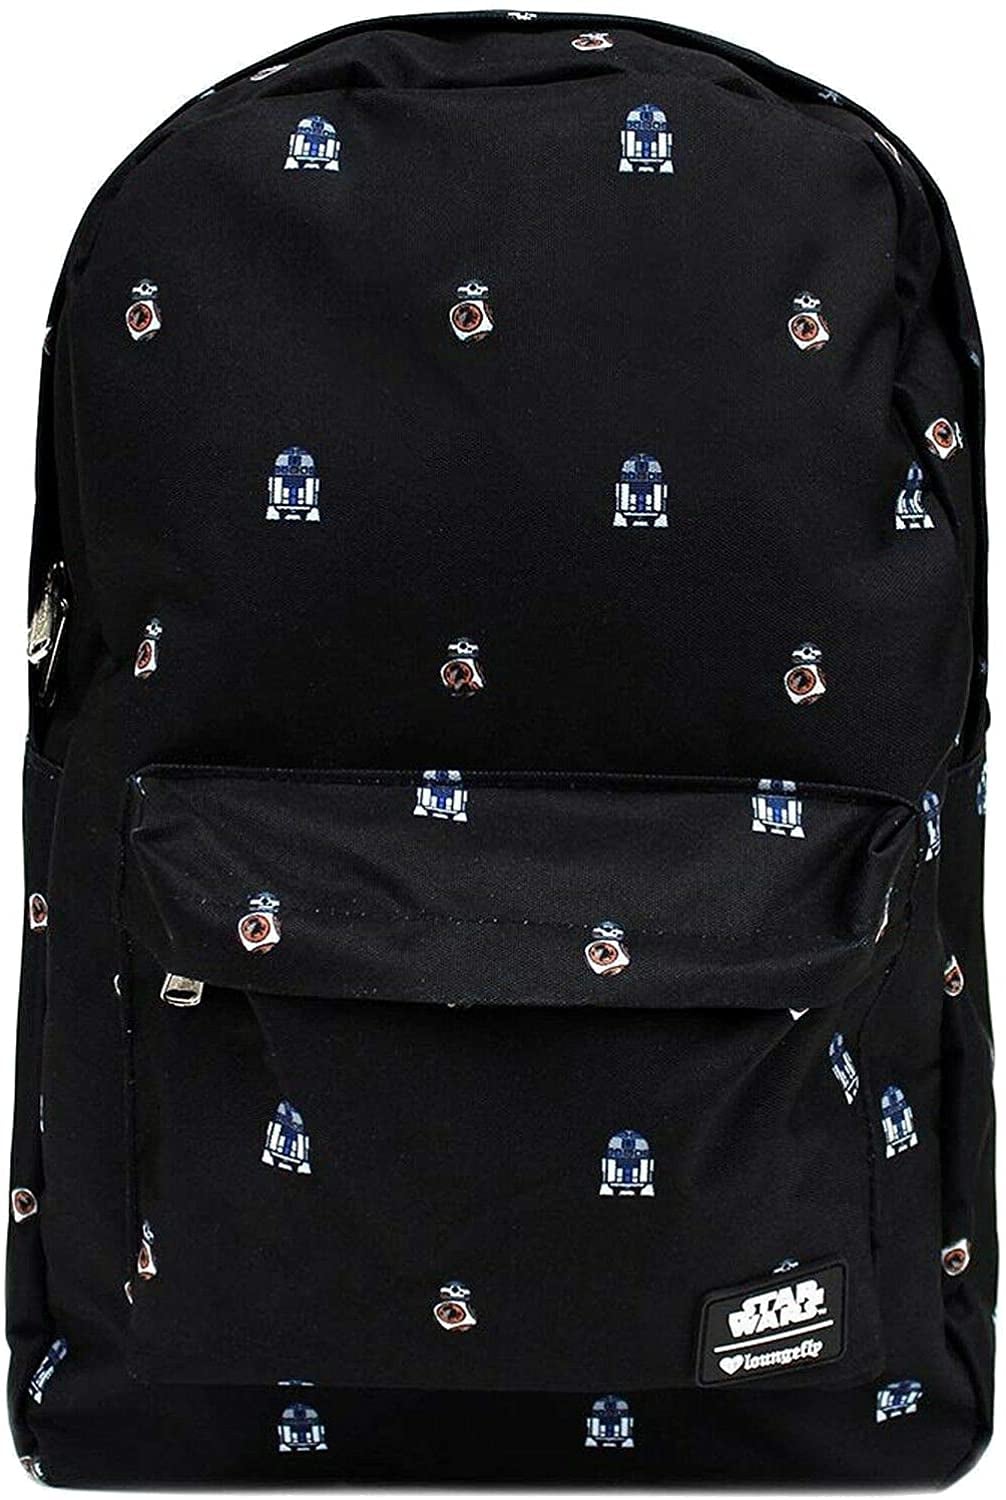 Star Wars Force Awaken BB8 Backpack 16" Bag Disney Rucksack Mochila Bolsa Black 